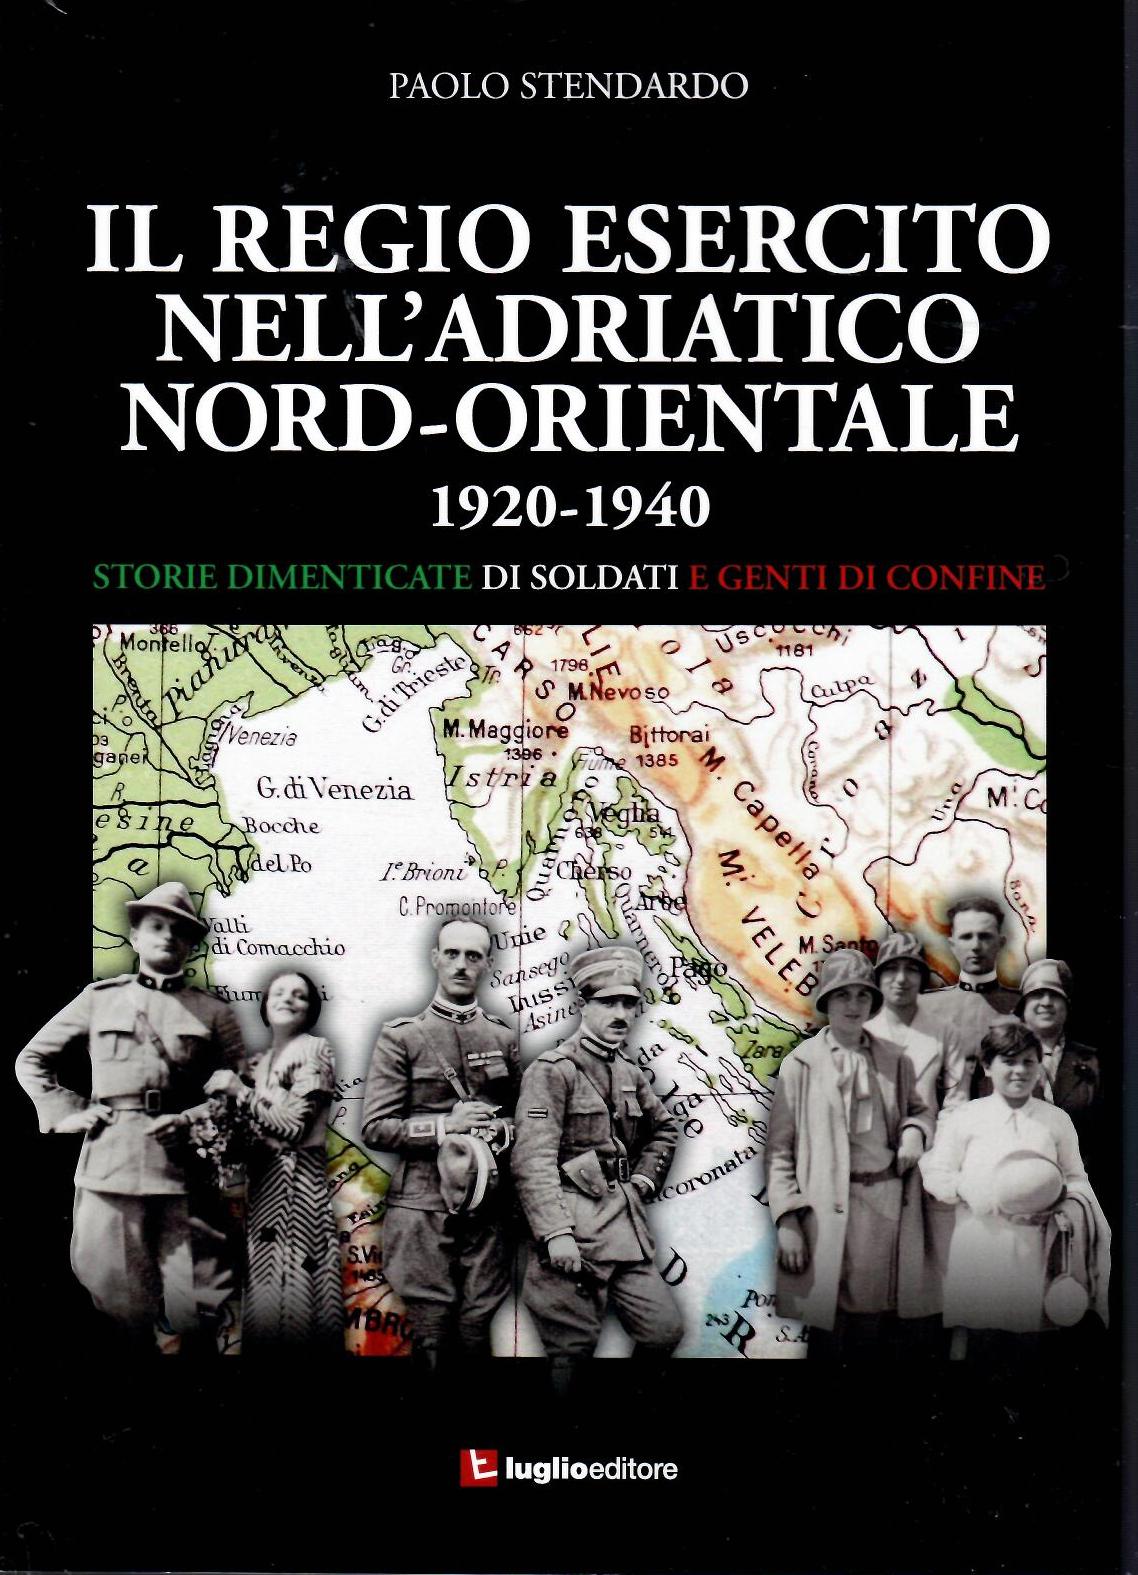 Il Regio Esercito nell’Adriatico Nord-Occidentale 1920-1940